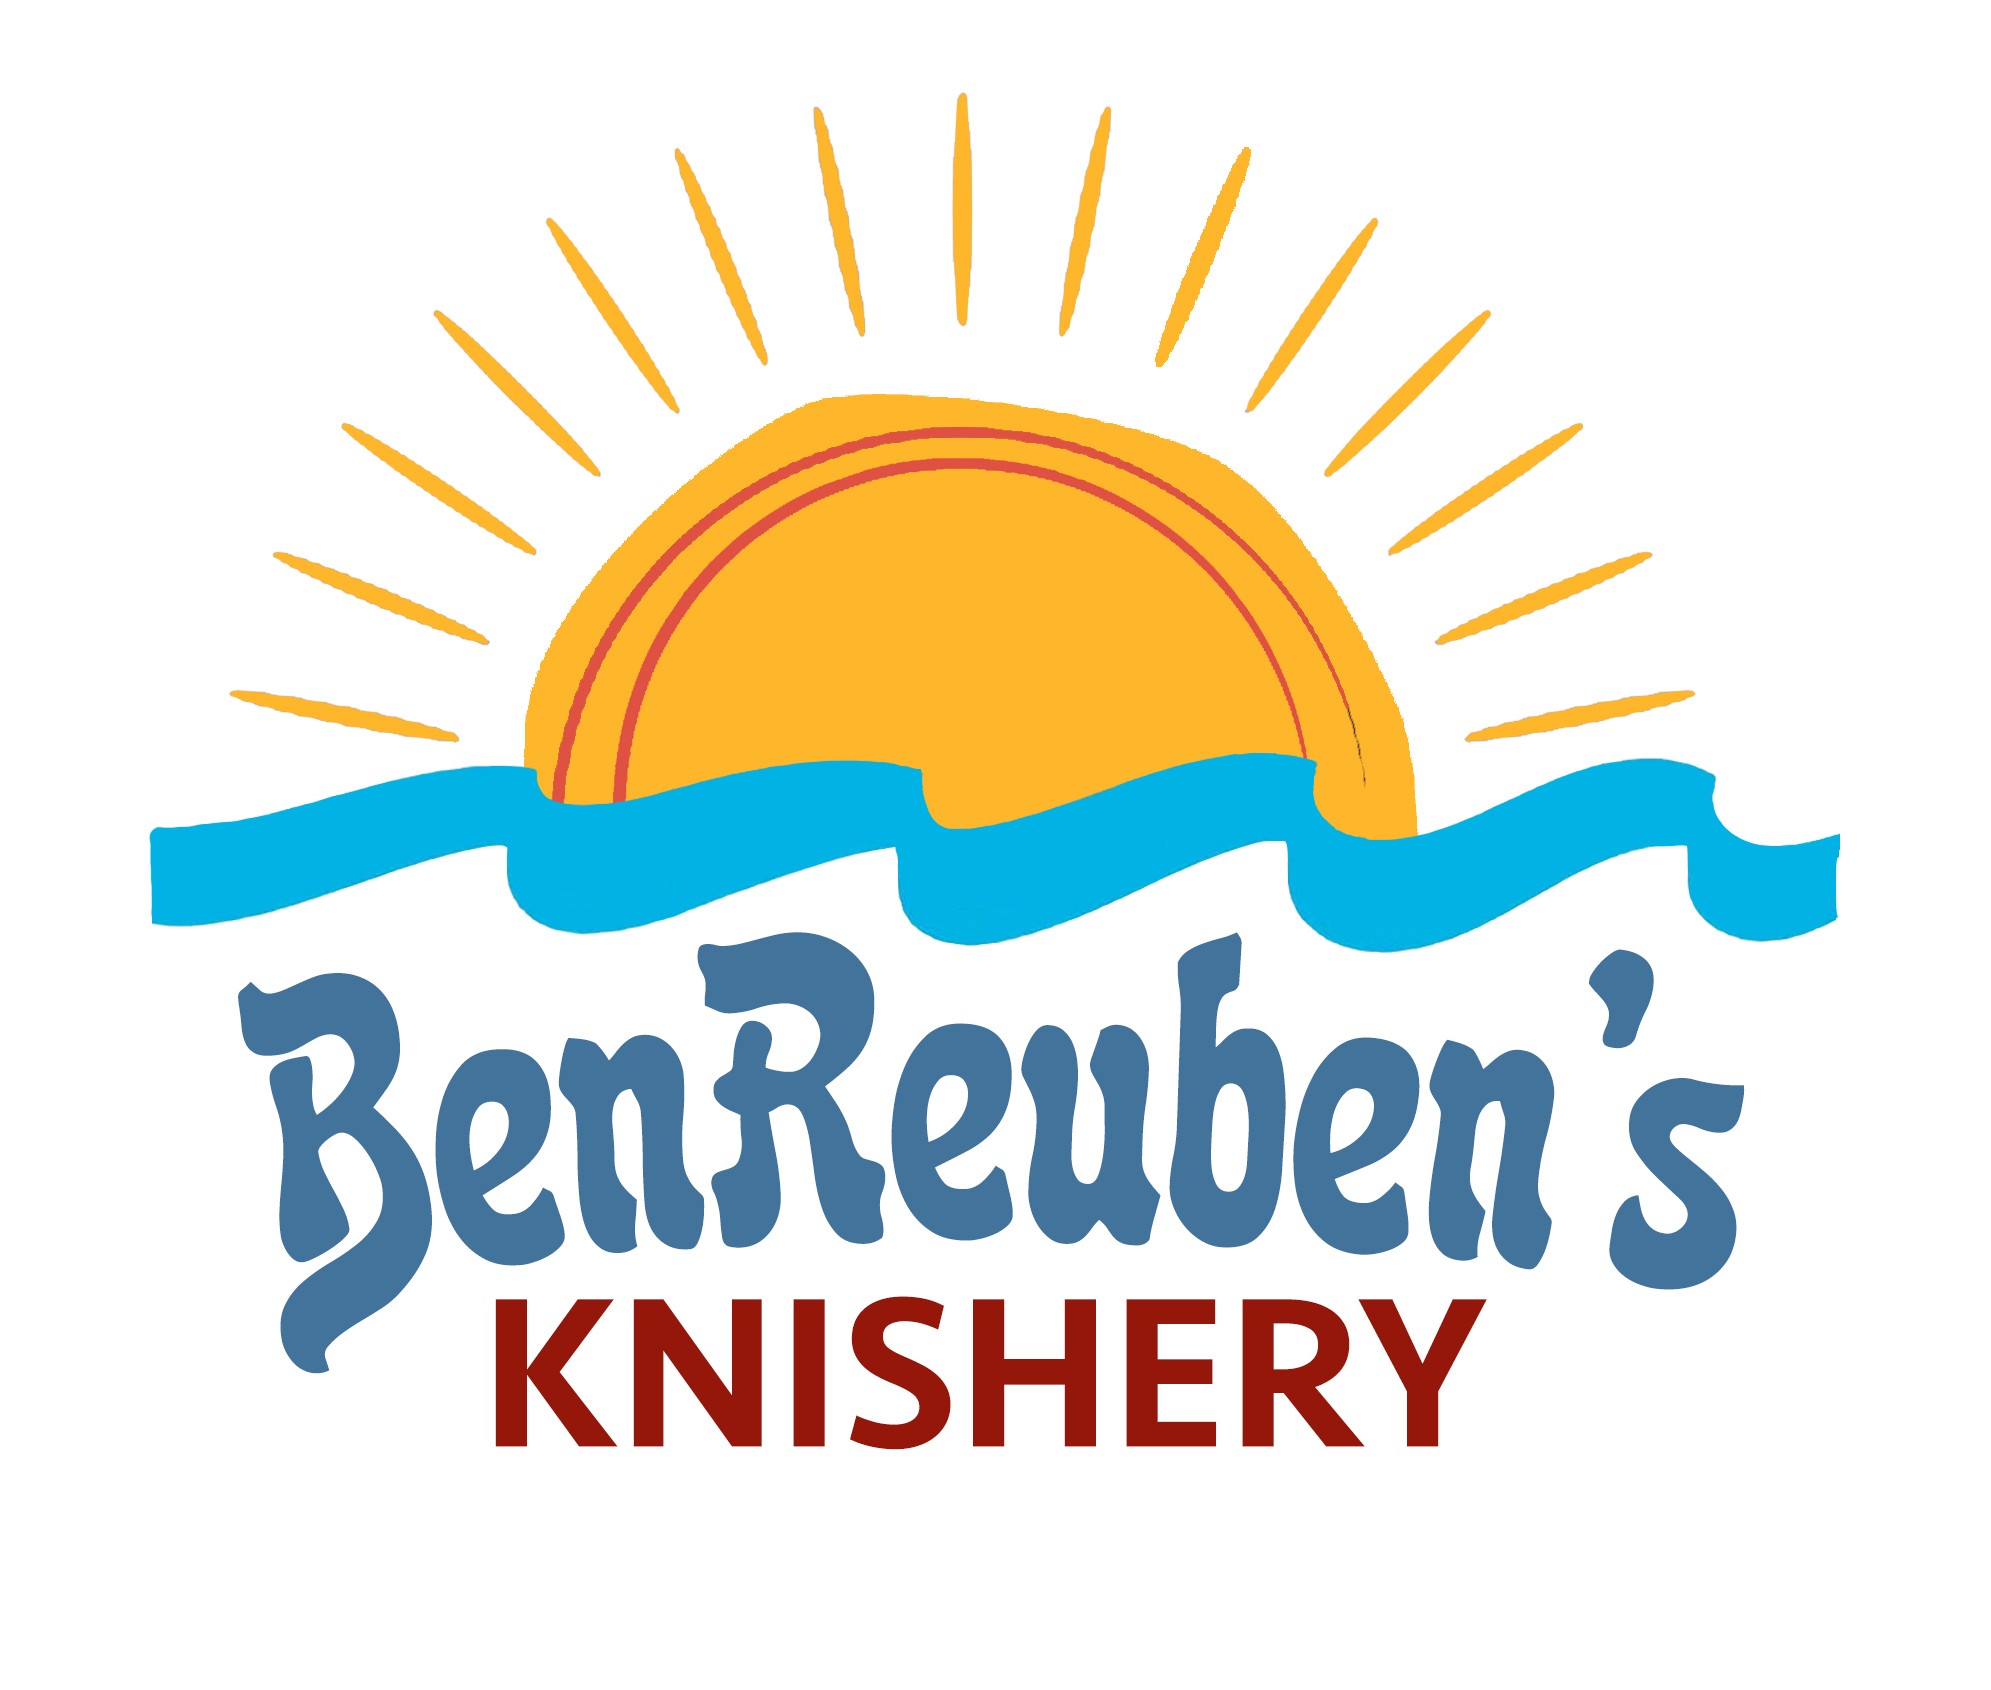 BenReuben’s Knishery